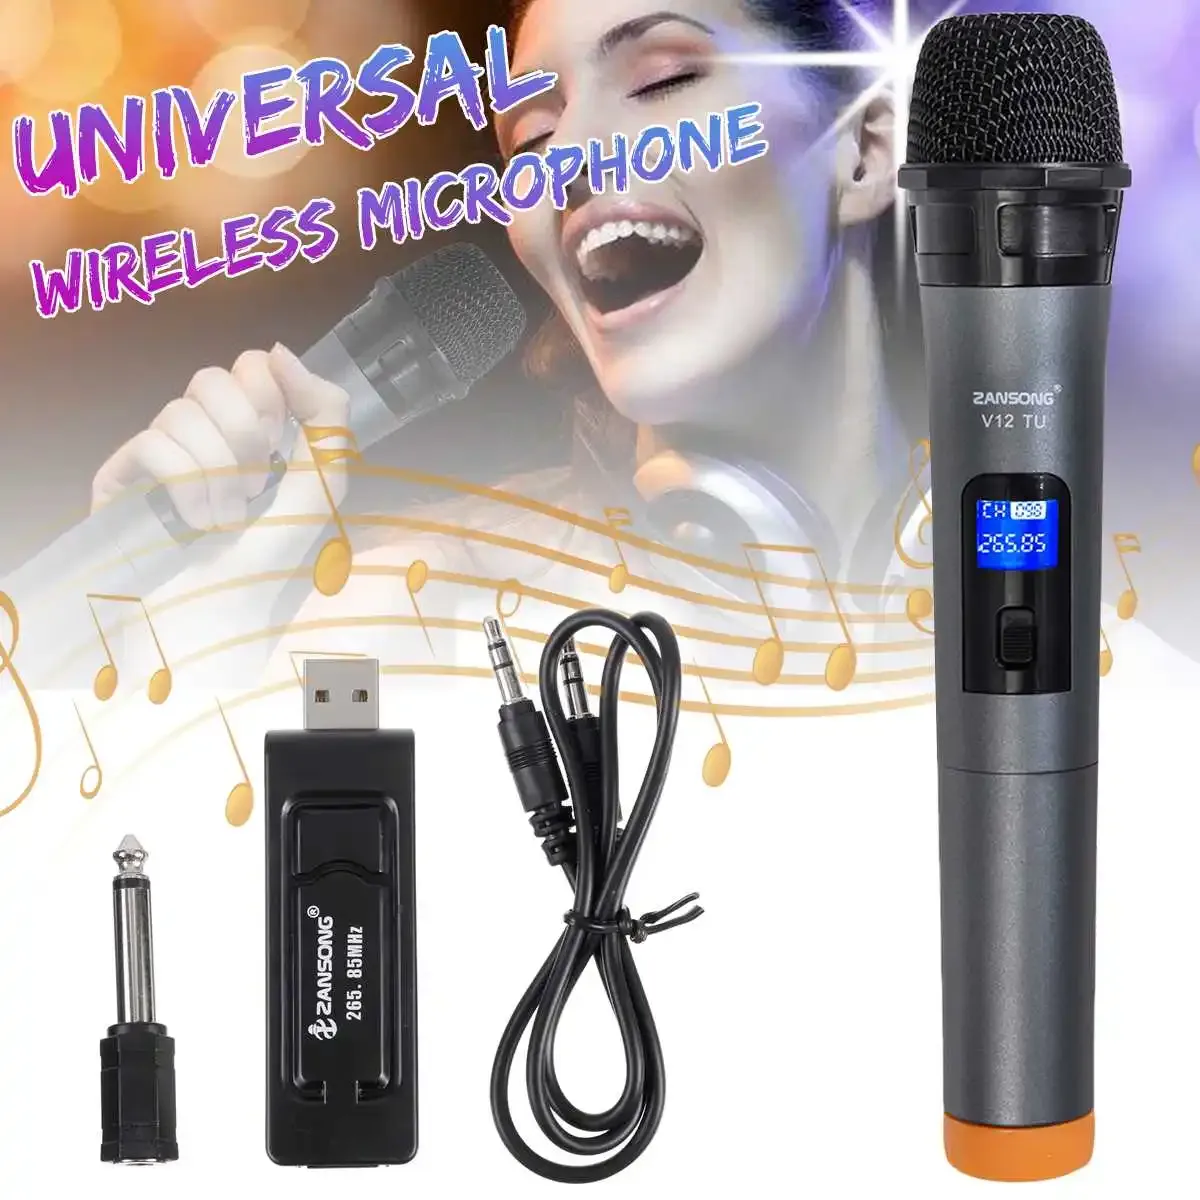 Mikrofony Universal UHF bezprzewodowy profesjonalny mikrofon z odbiornikiem USB dla mikrofonu karaoke dla wzmacniacza wydajności kościelnego